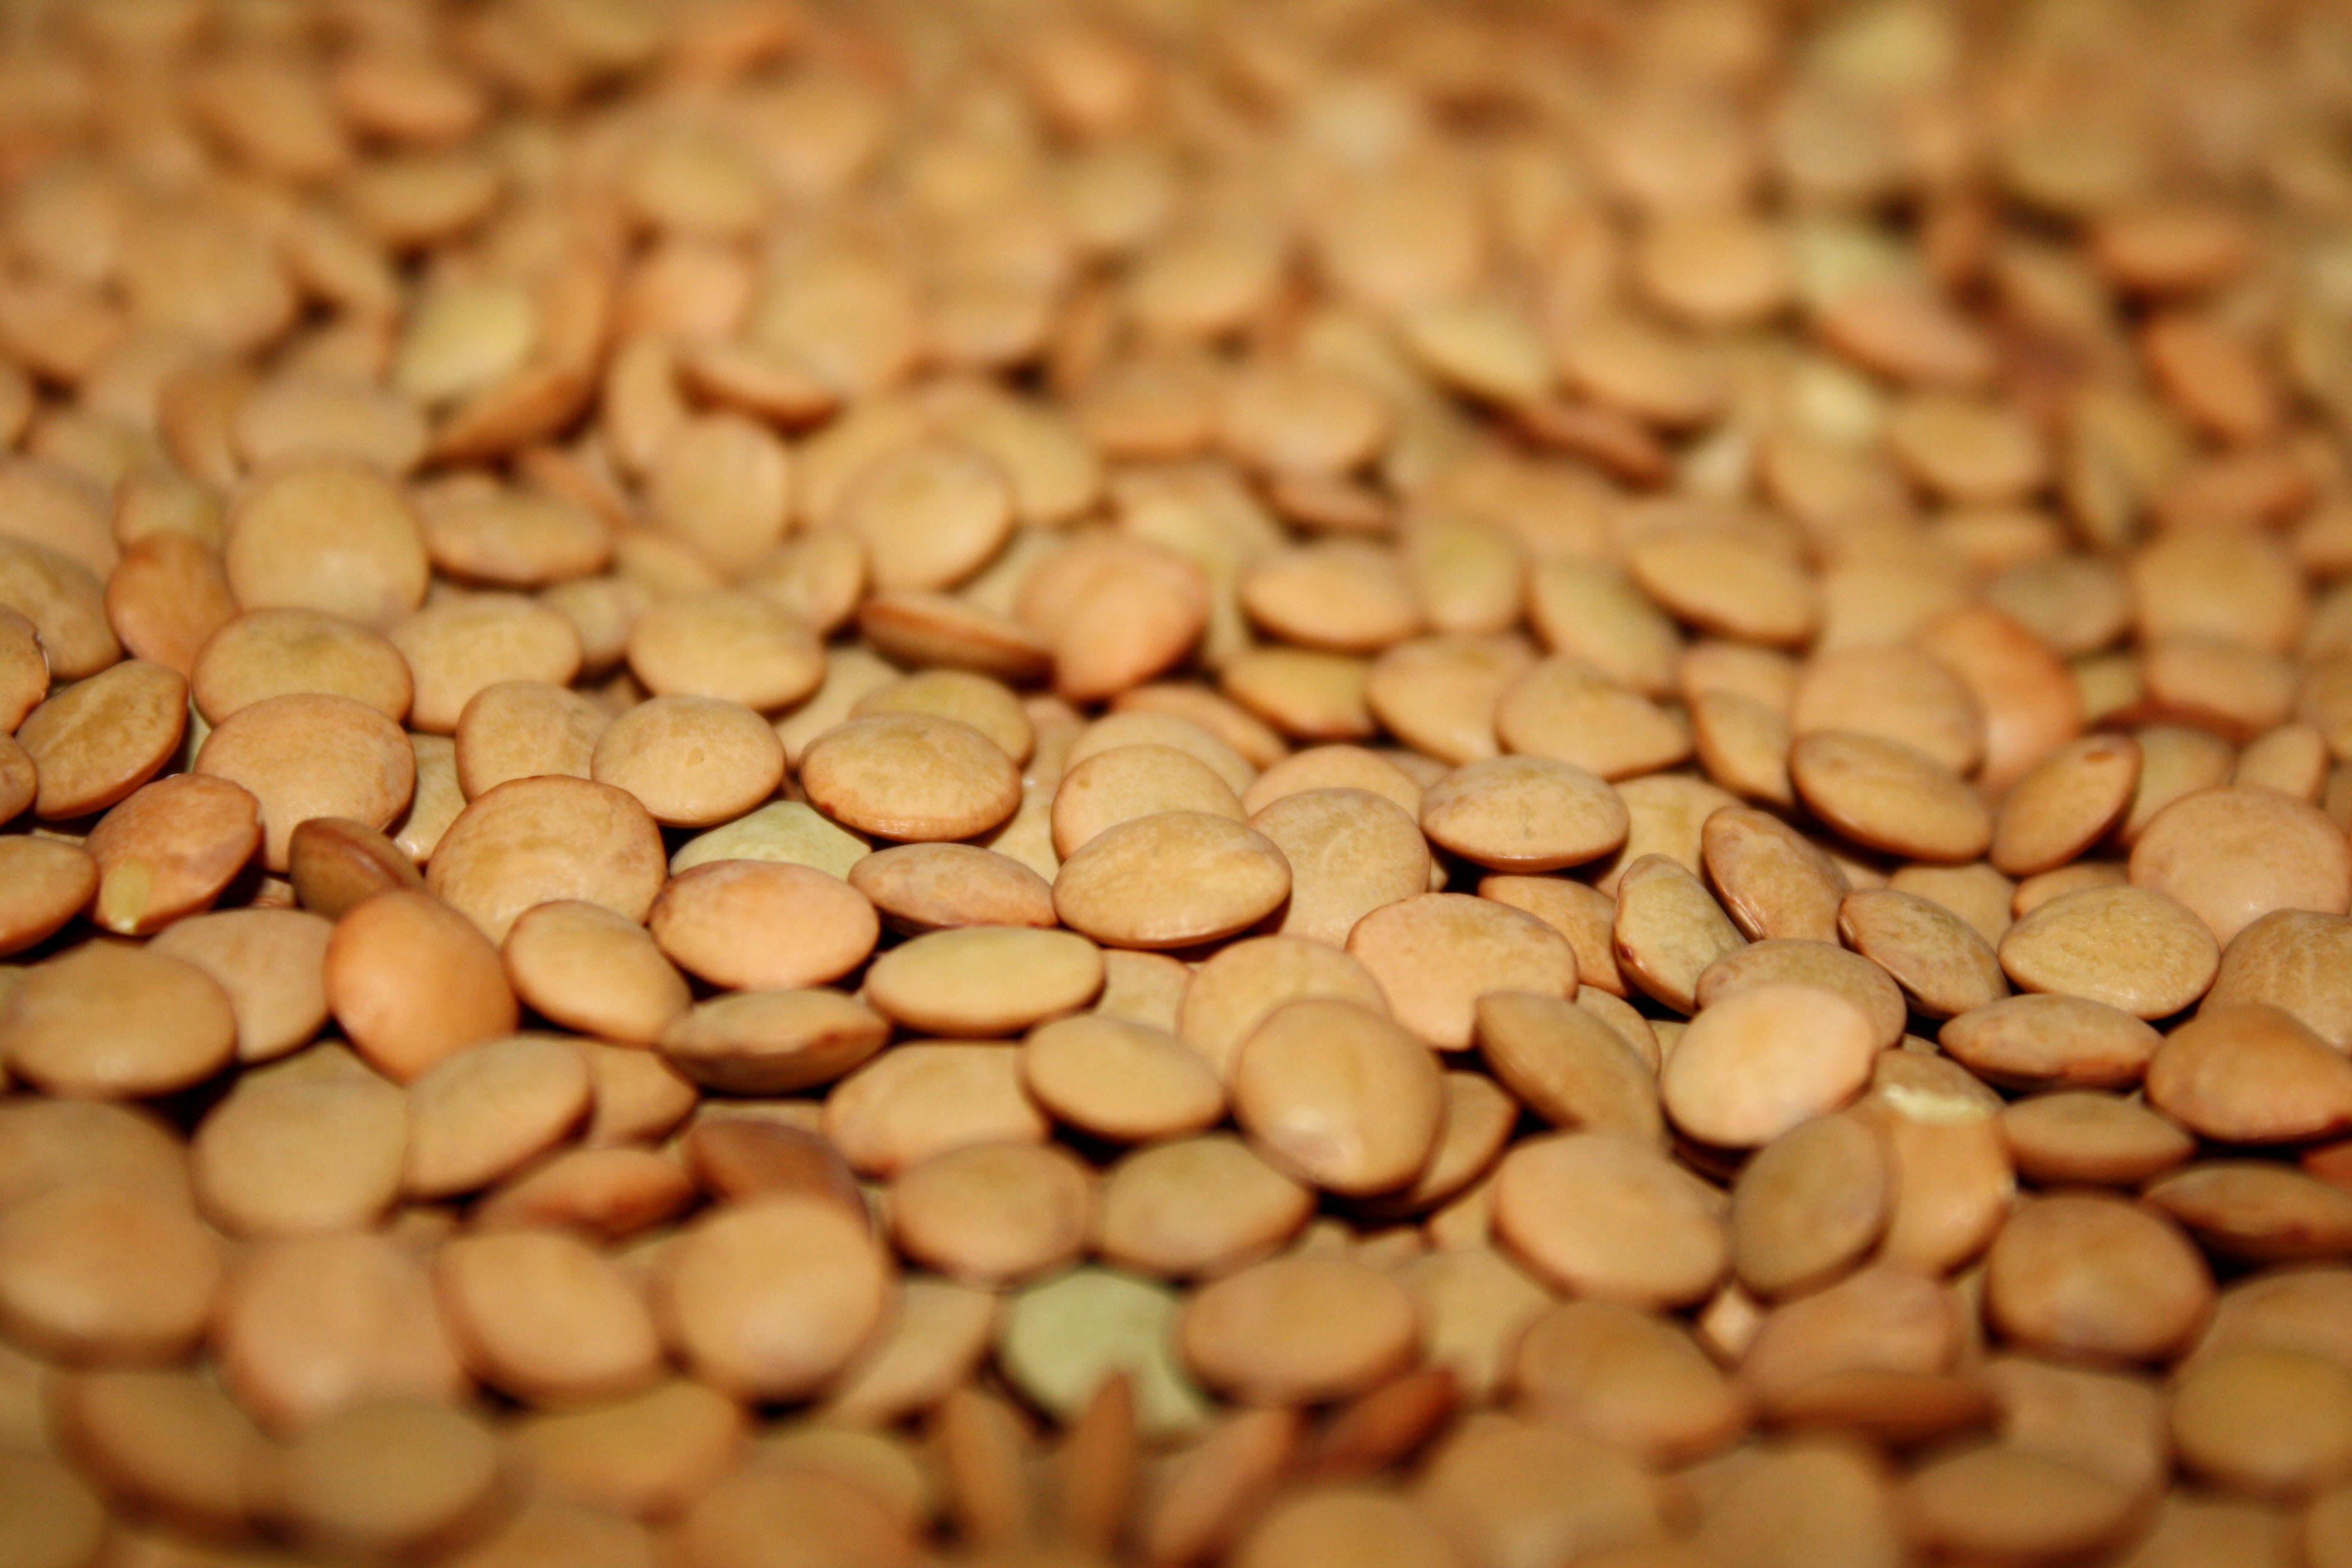 Picture free photograph photos. Bean clipart lentils